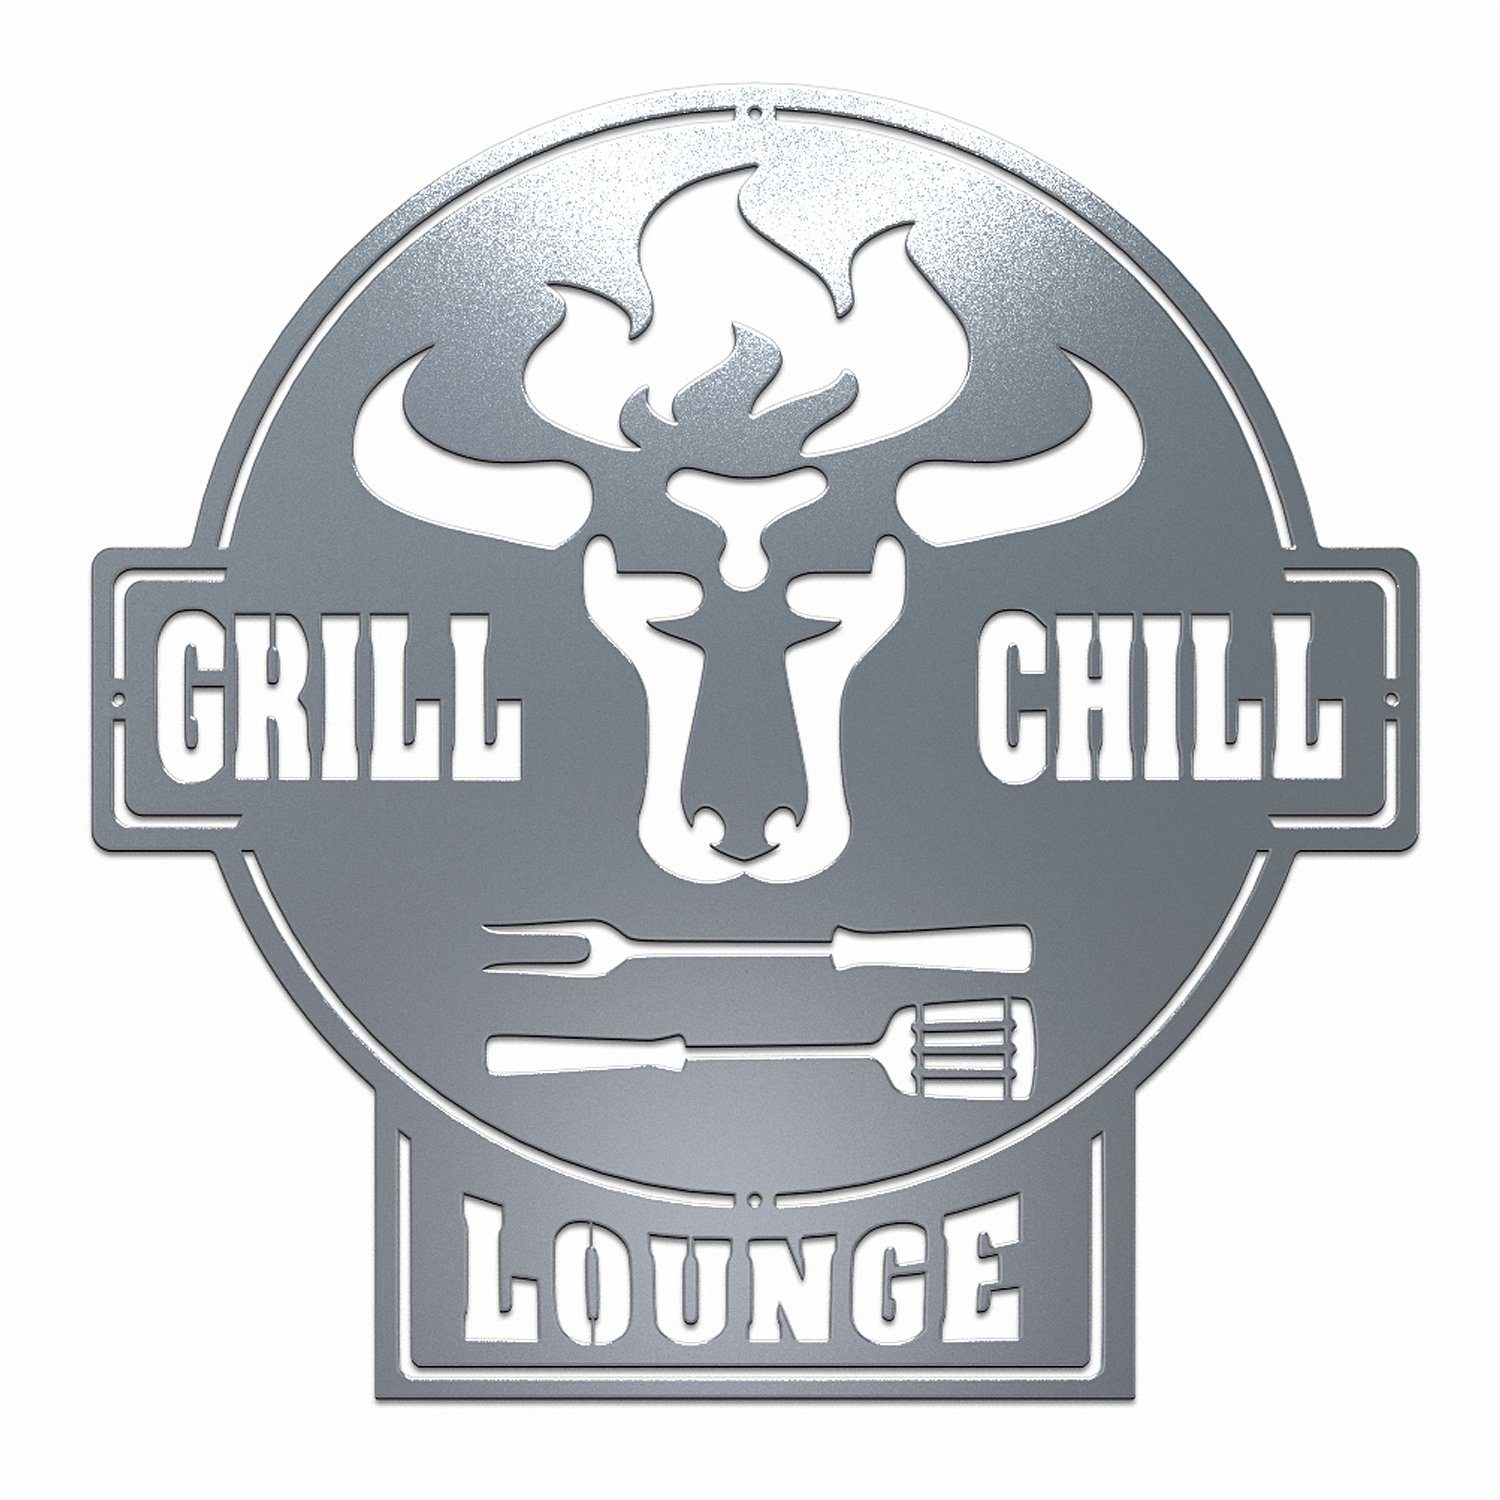 teileplus24 Wanddekoobjekt CG01 Gartenschild Grill Schild Metallschild BBQ Grill & Chill Lounge BBQ Lounge Edelrost